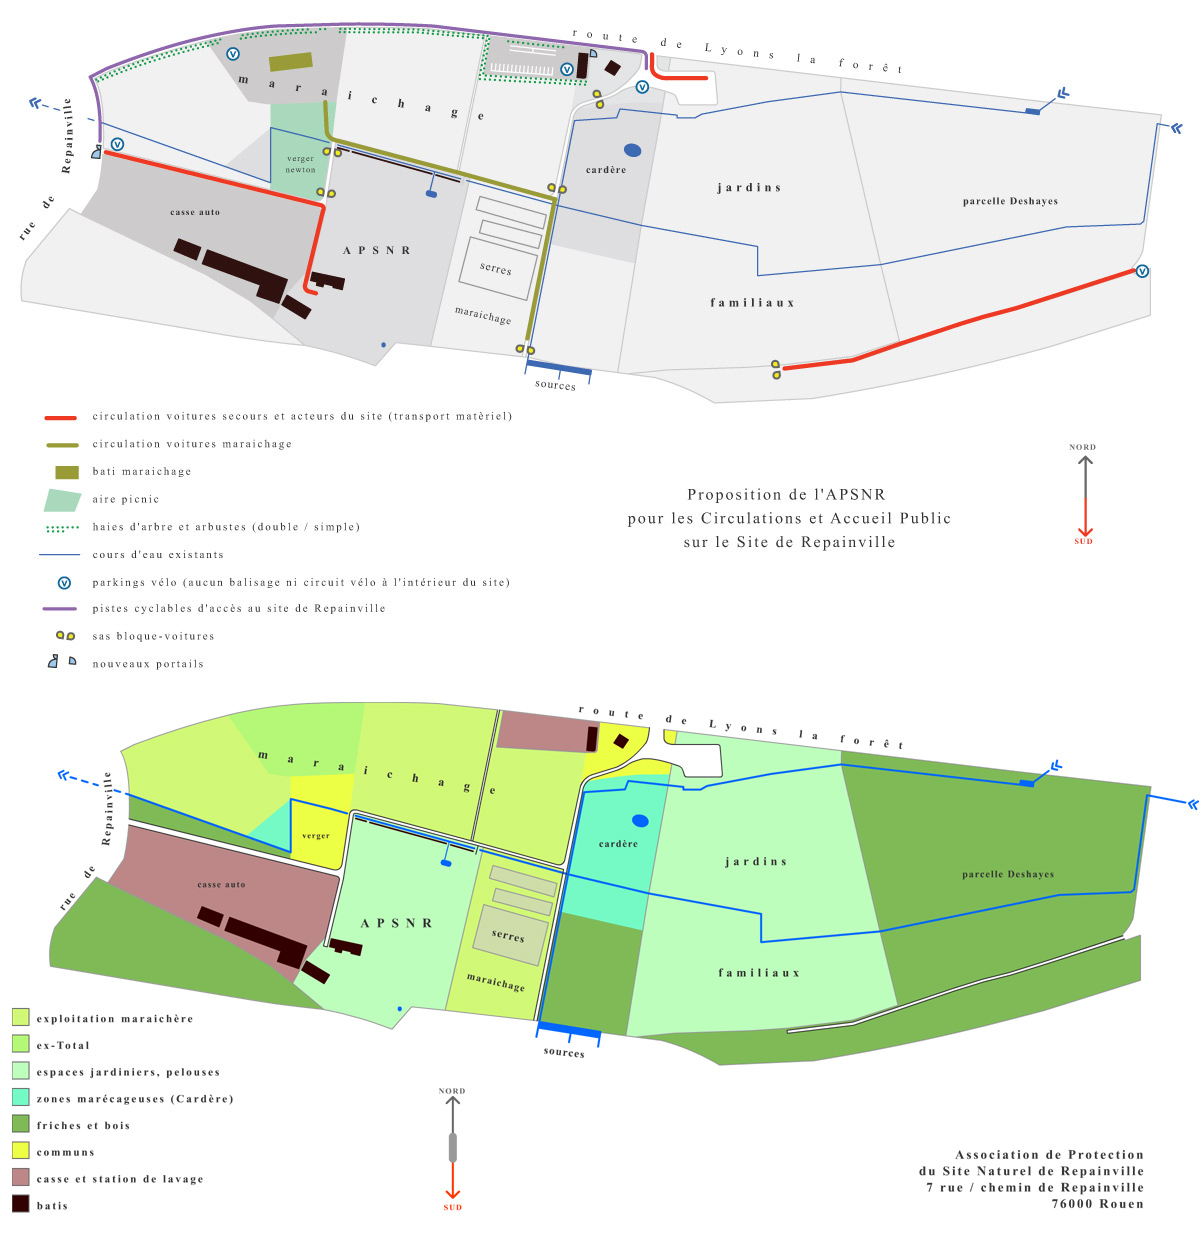 bomsky - graphisme - plans du site naturel de repainville - Rouen